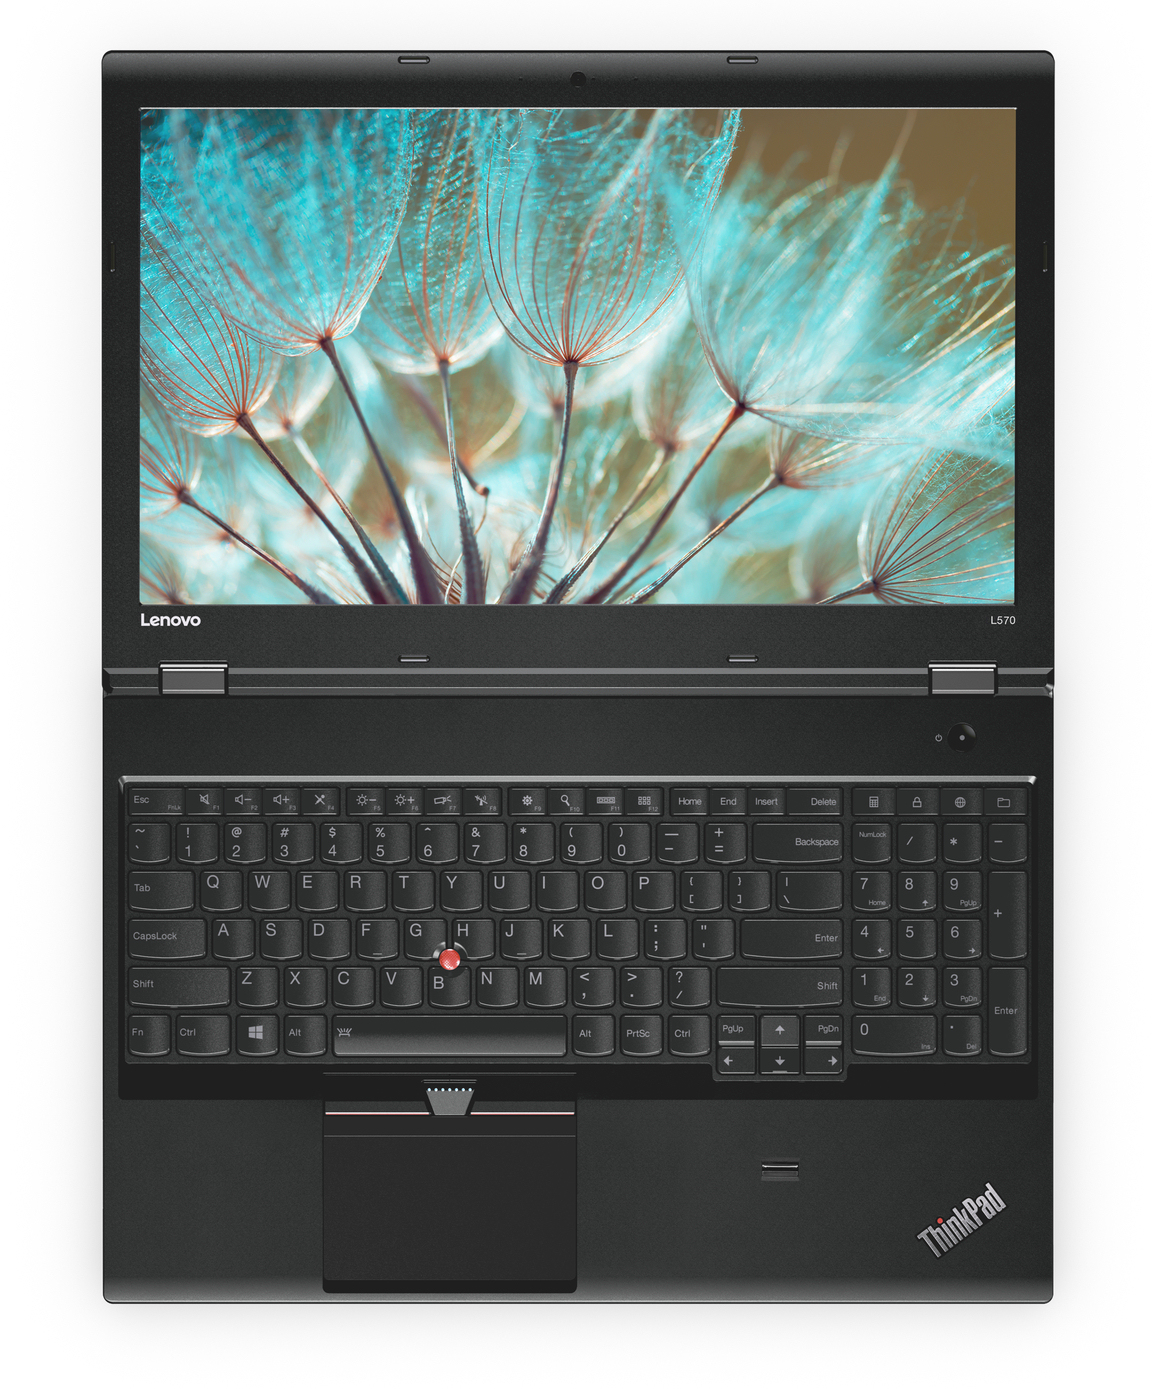 超美品ThinkPad L570/i5/8G/新SSD480/N247